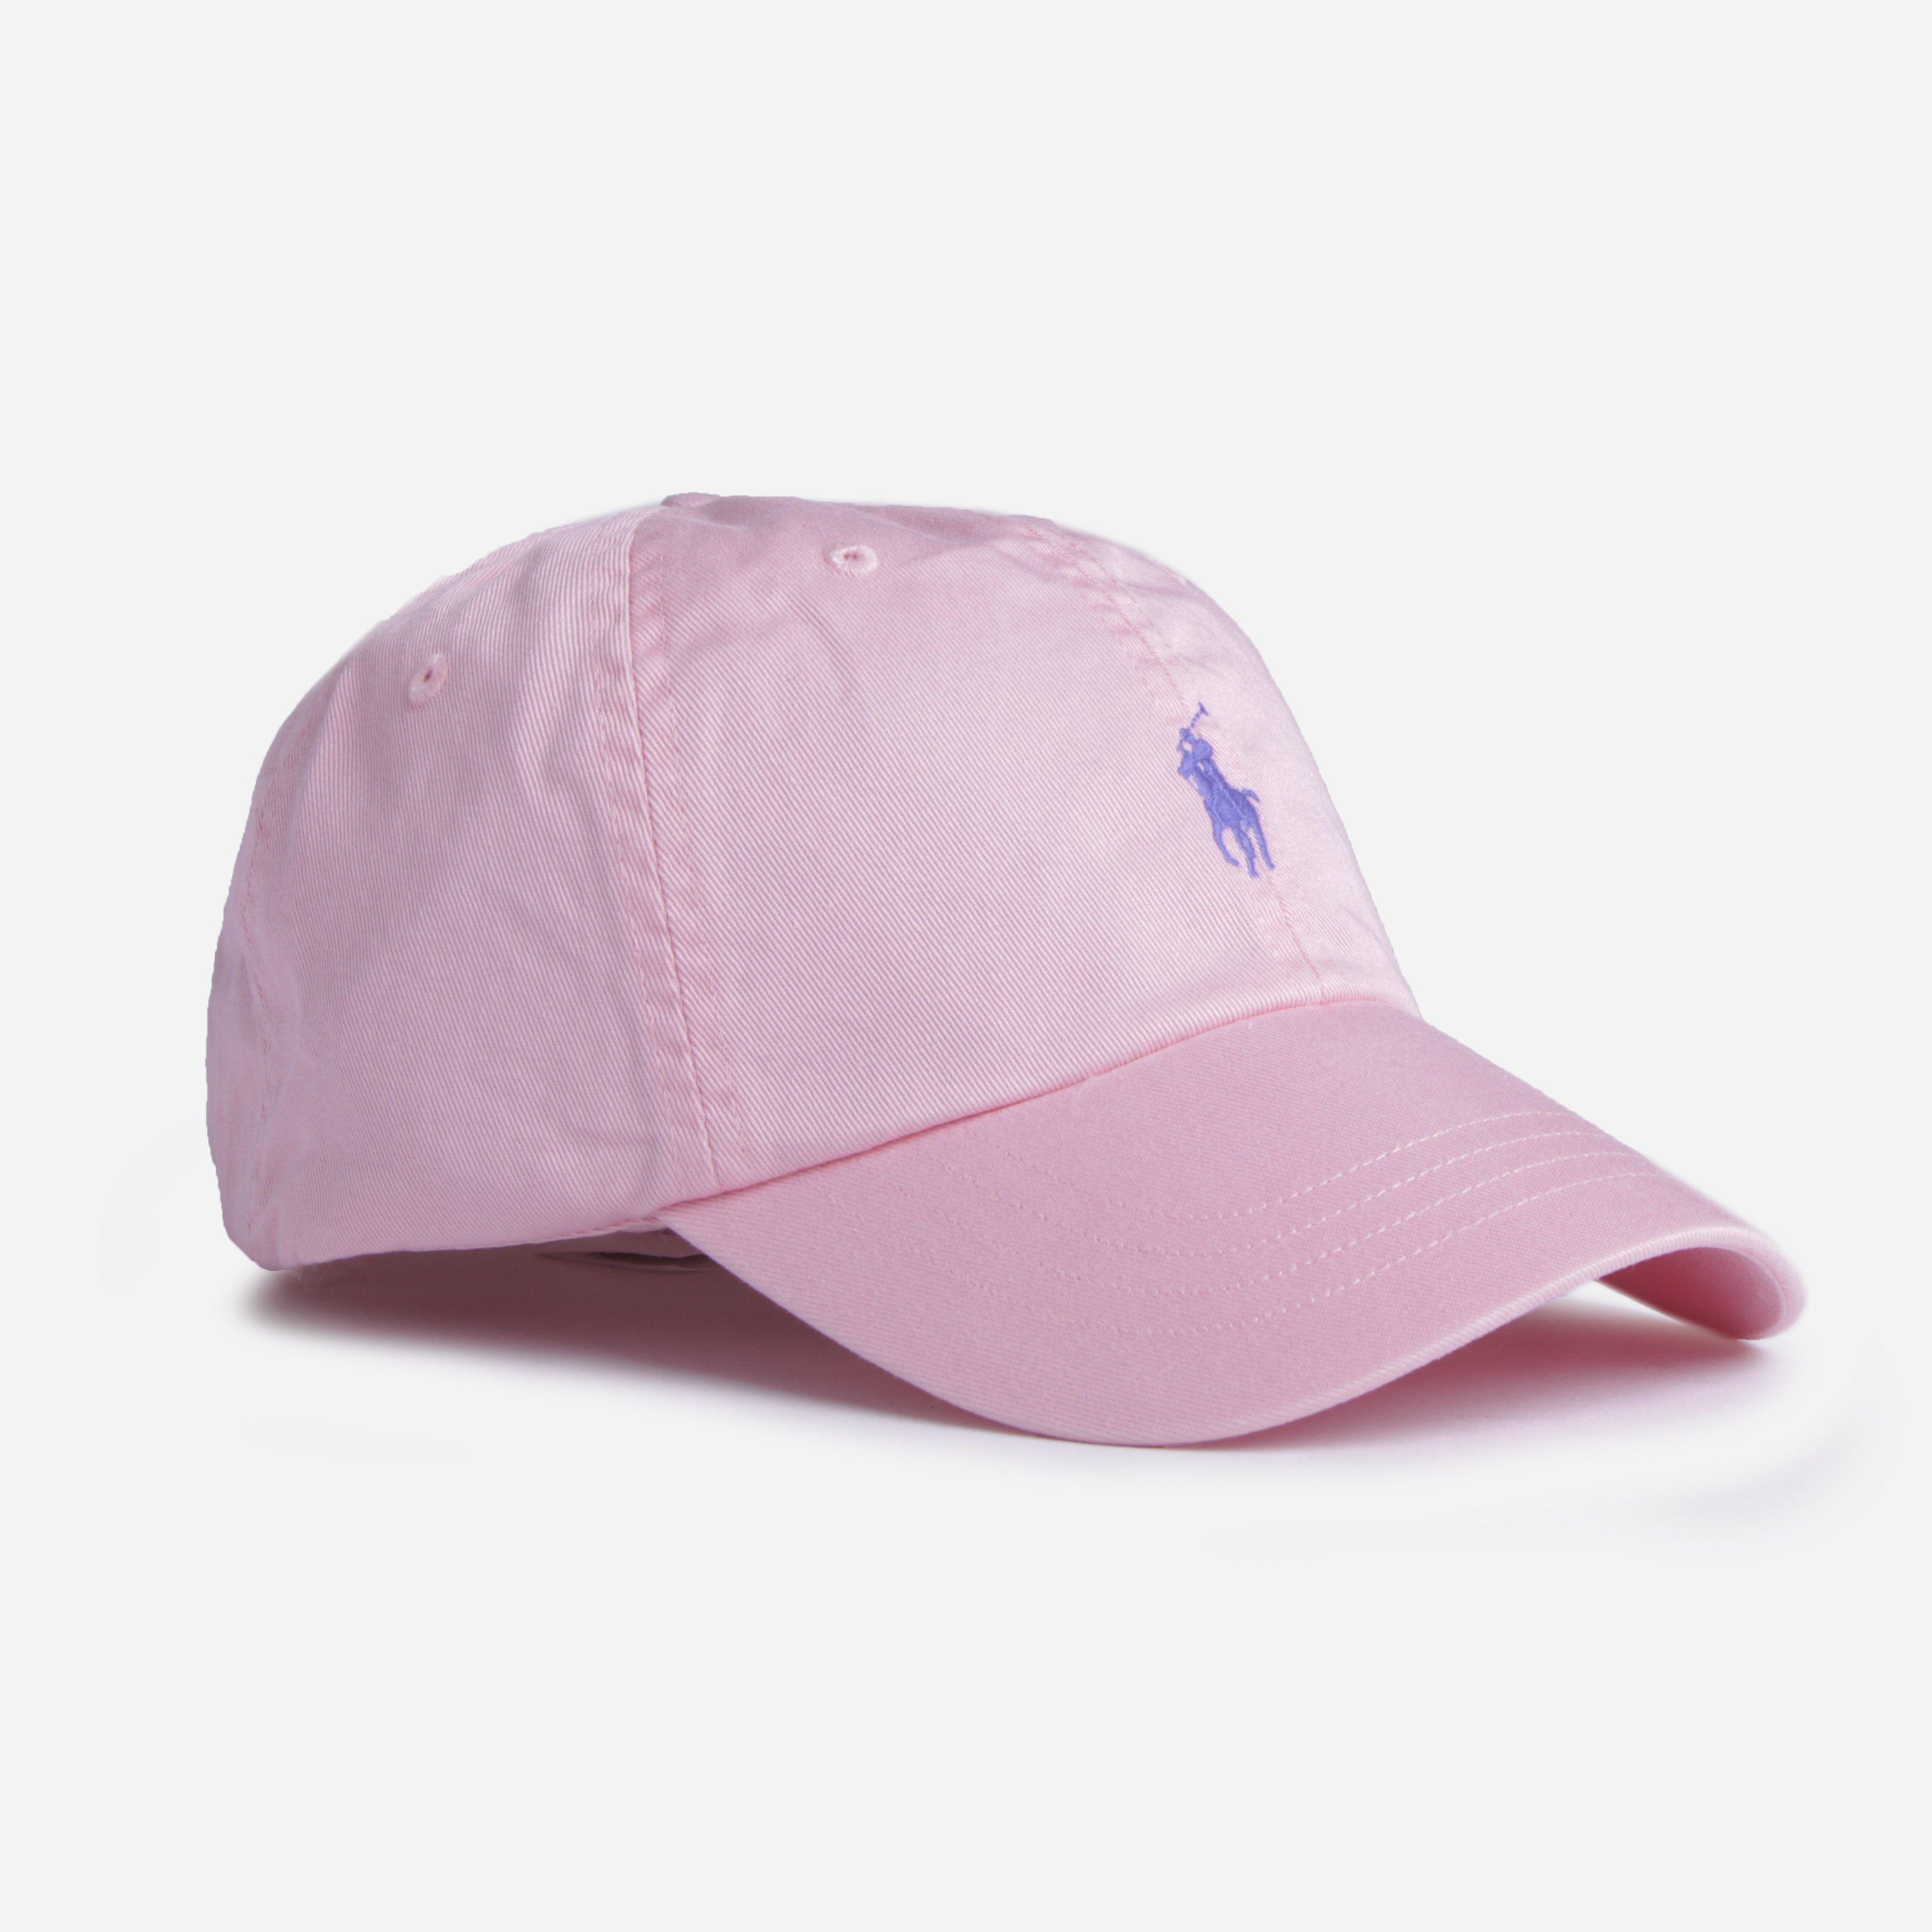 Polo Ralph Lauren Classic Sport Cap in Pink for Men - Lyst